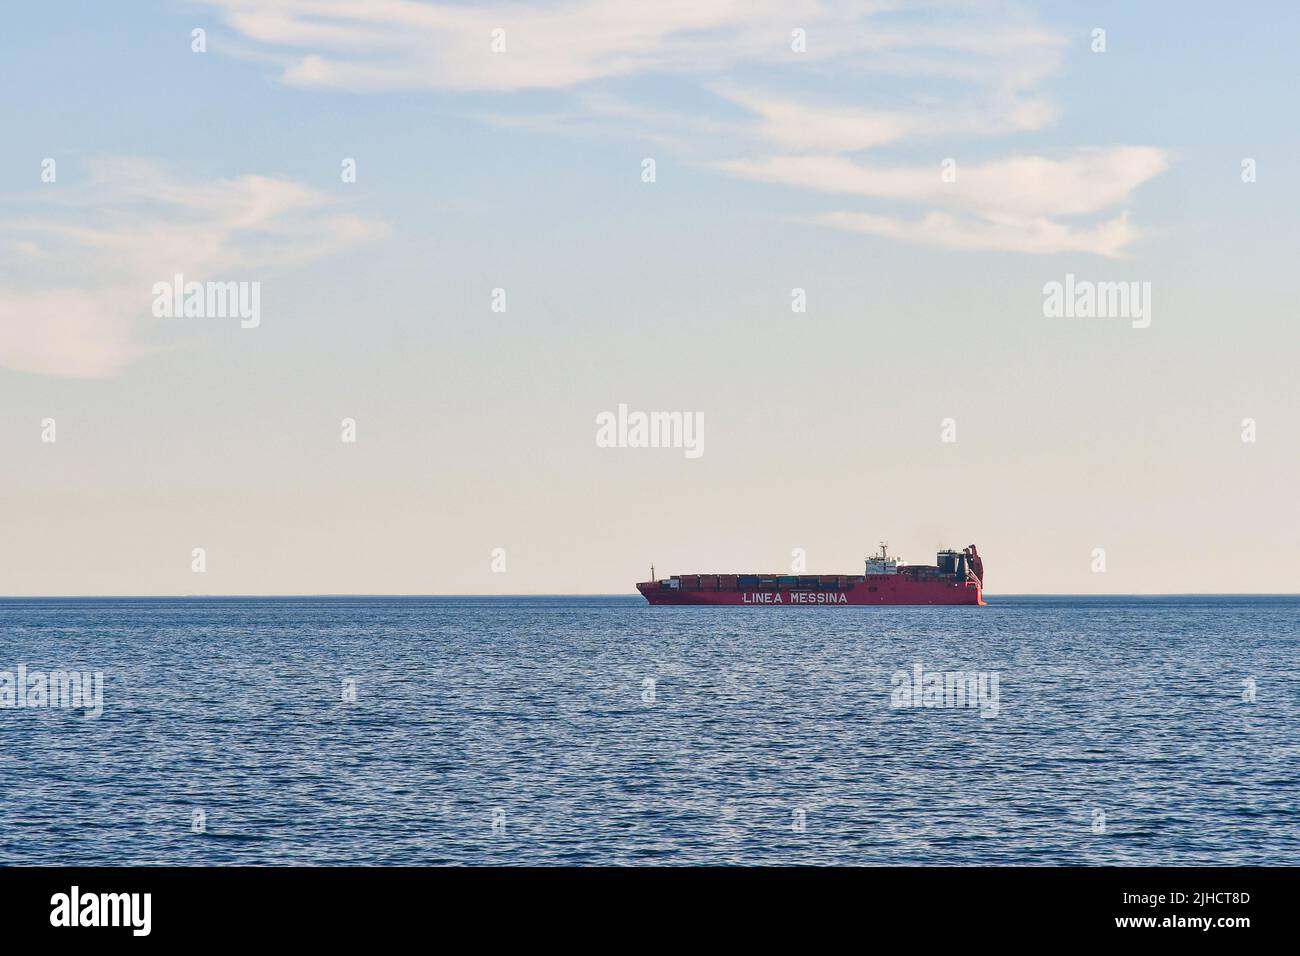 Nave Containers della linea Messina, società di navigazione con sede a Genova, al largo della costa ligure, Nervi, Genova, Liguria, Italia Foto Stock